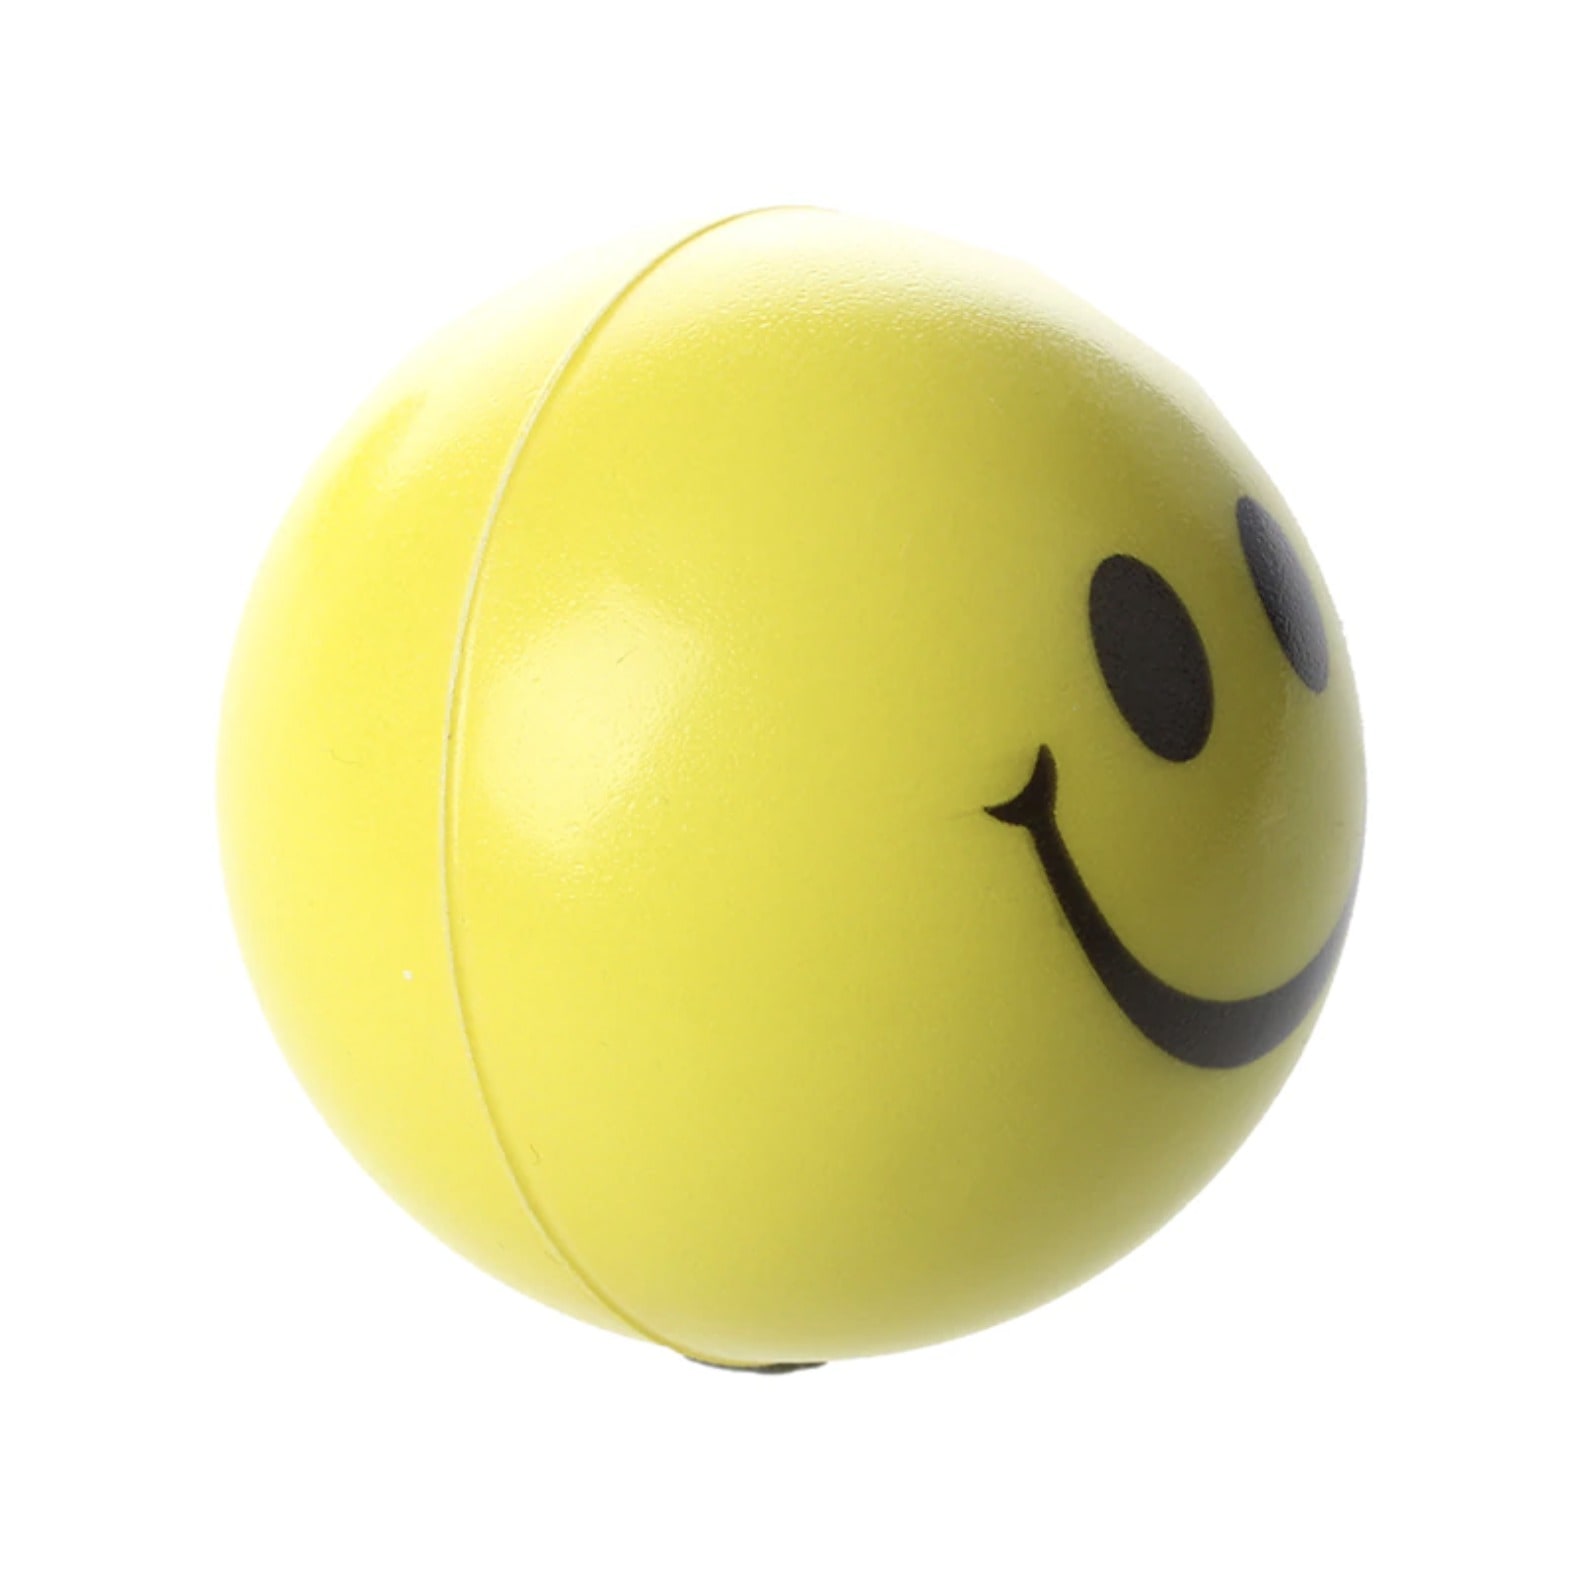 Jouet Balle Anti Stress: La Balle Anti Stress Smiley